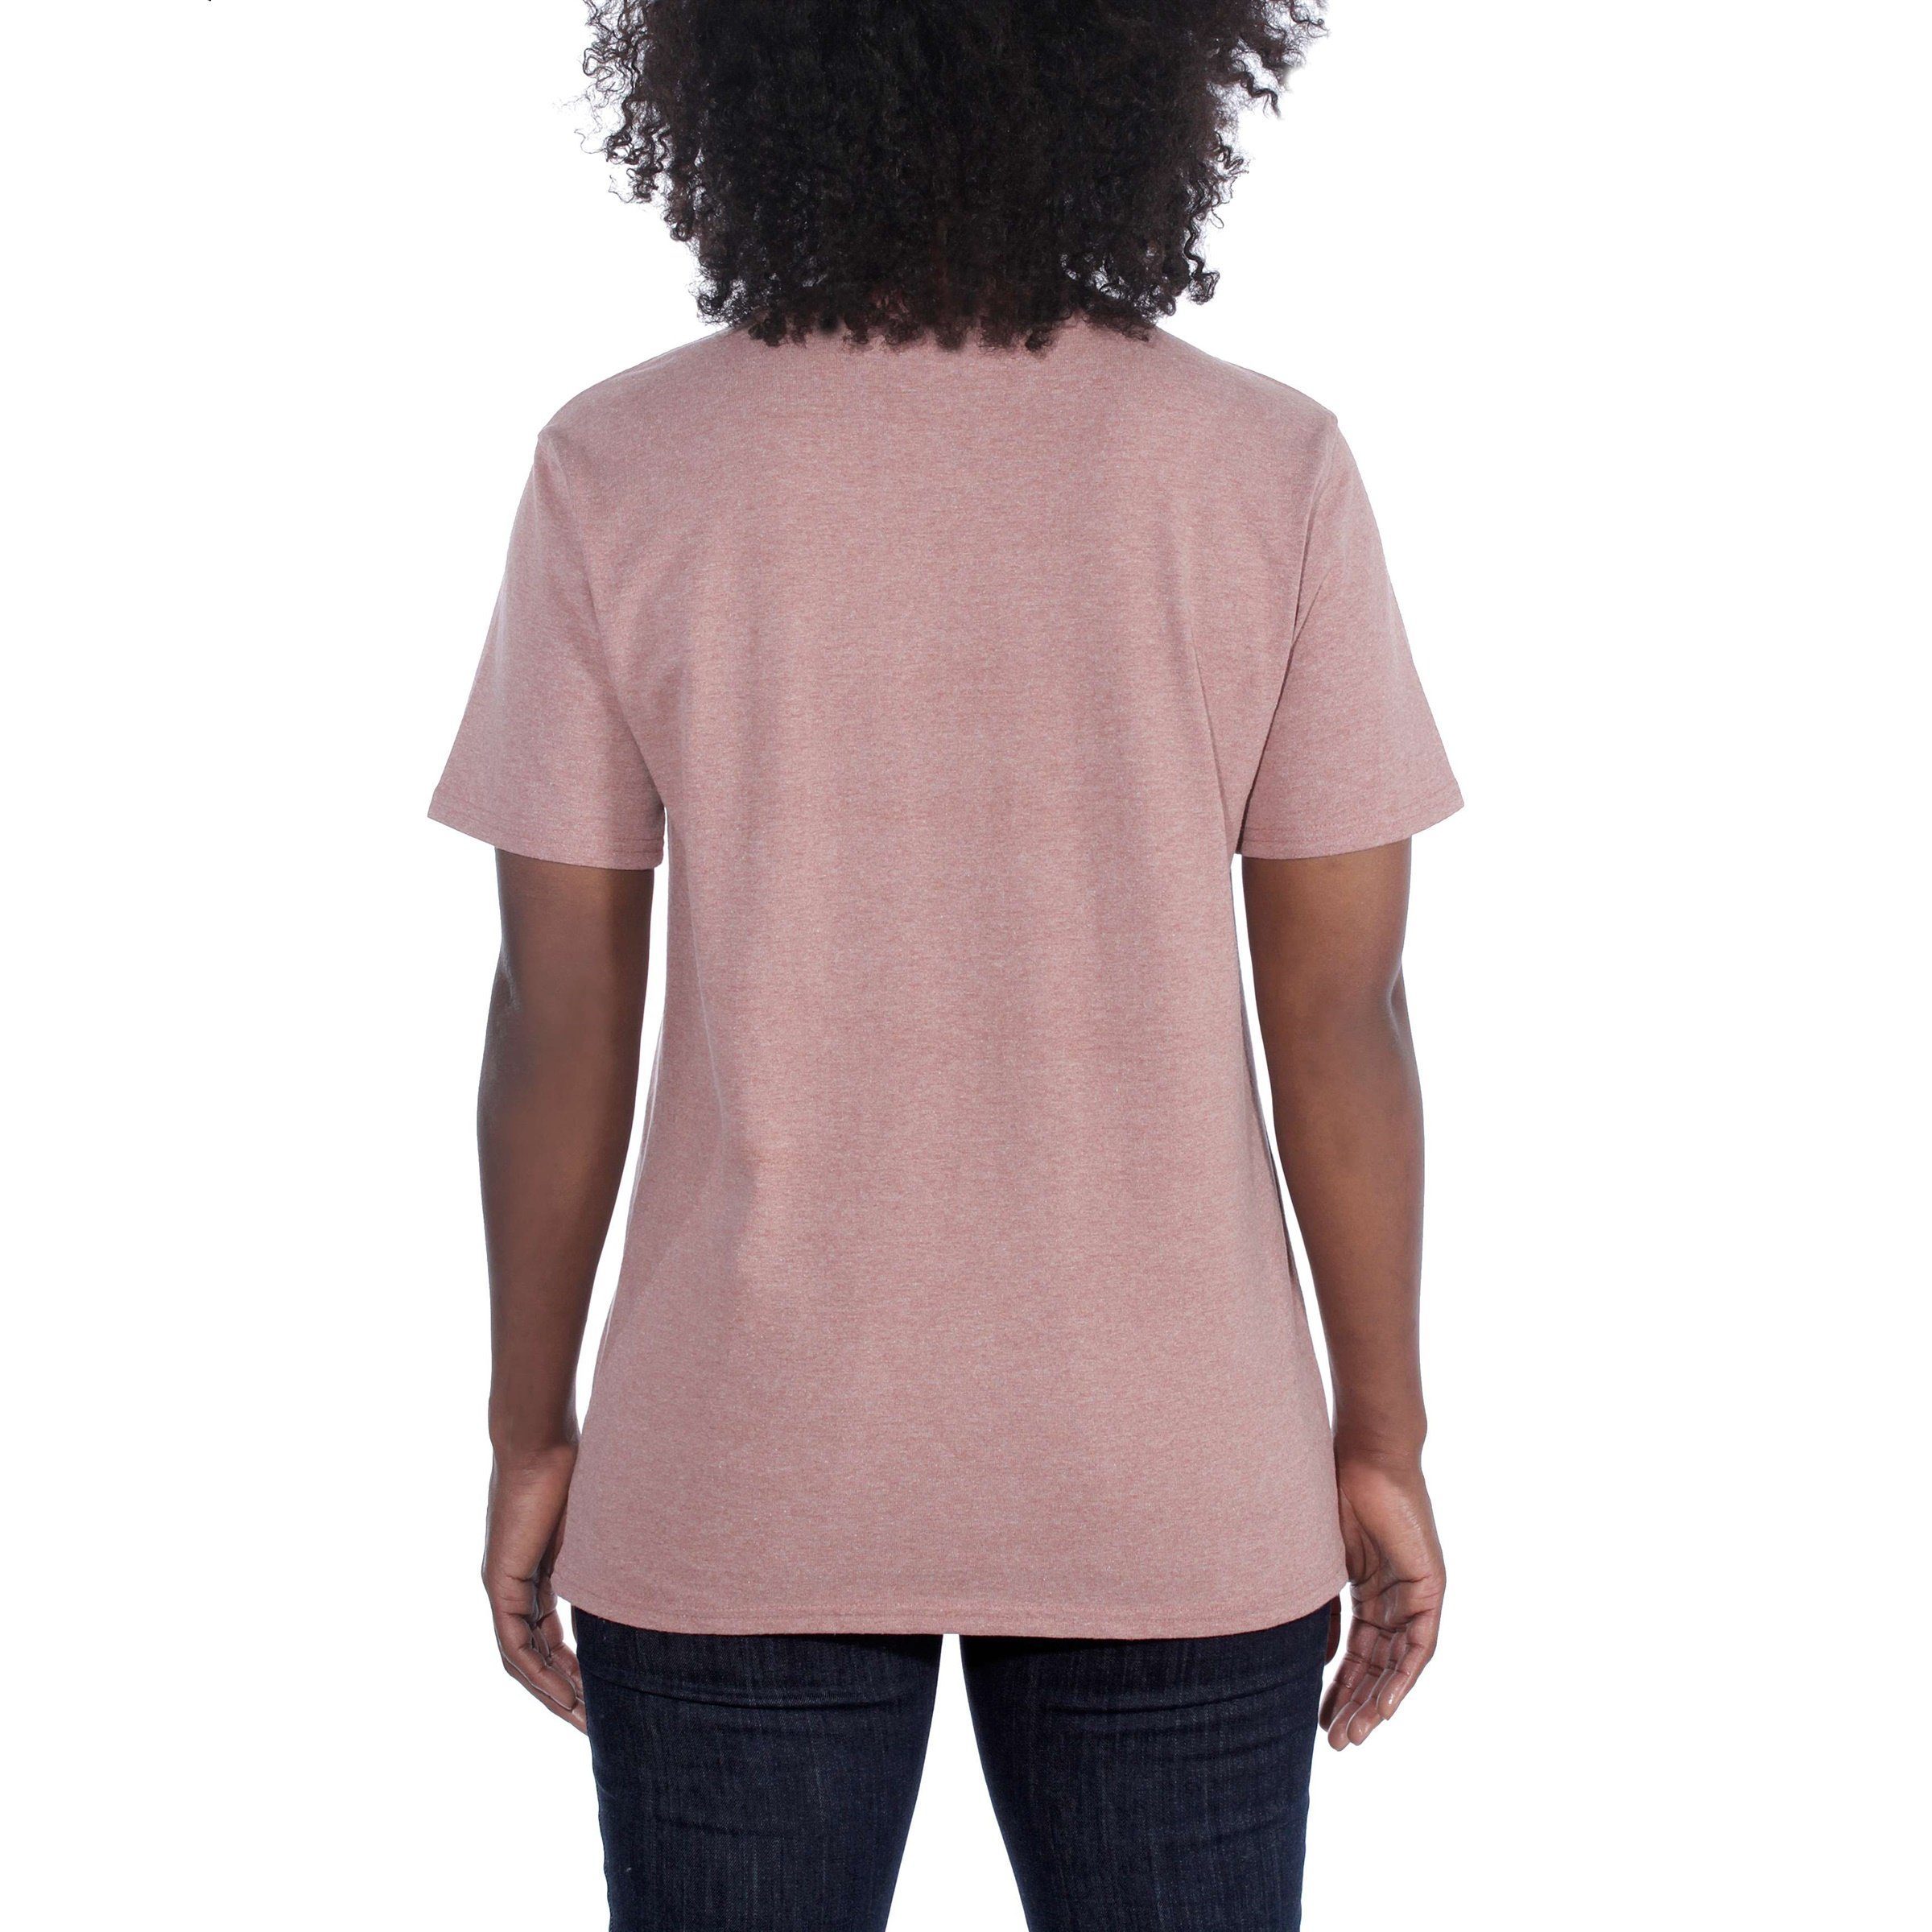 Damen Adult Carhartt heather Heavyweight Carhartt Pocket T-Shirt Short-Sleeve Fit Loose lavender T-Shirt soft